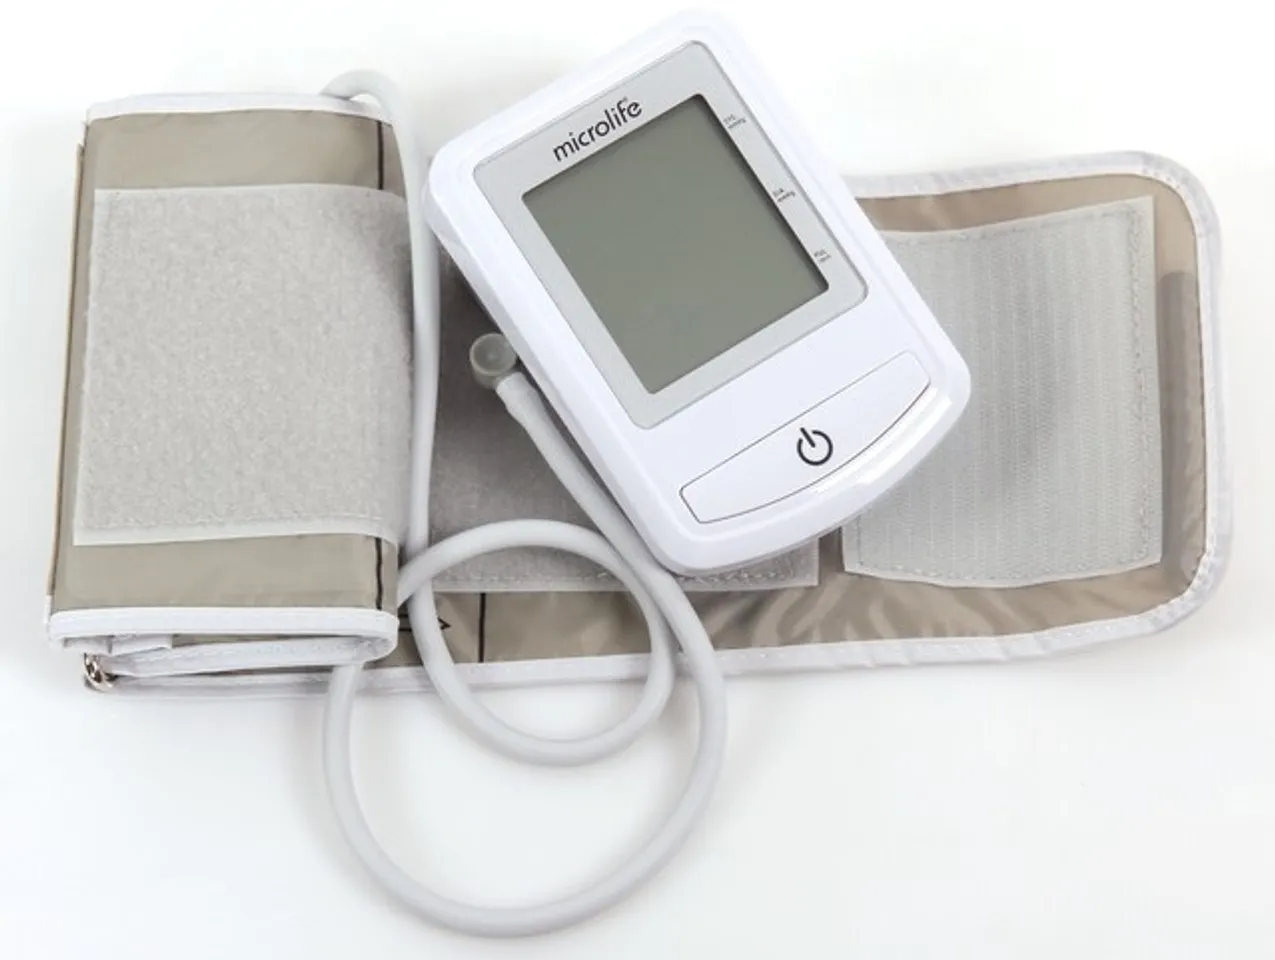 Công nghệ cảm biến thông minh và bơm hơi giúp đo huyết áp nhanh, chính xác